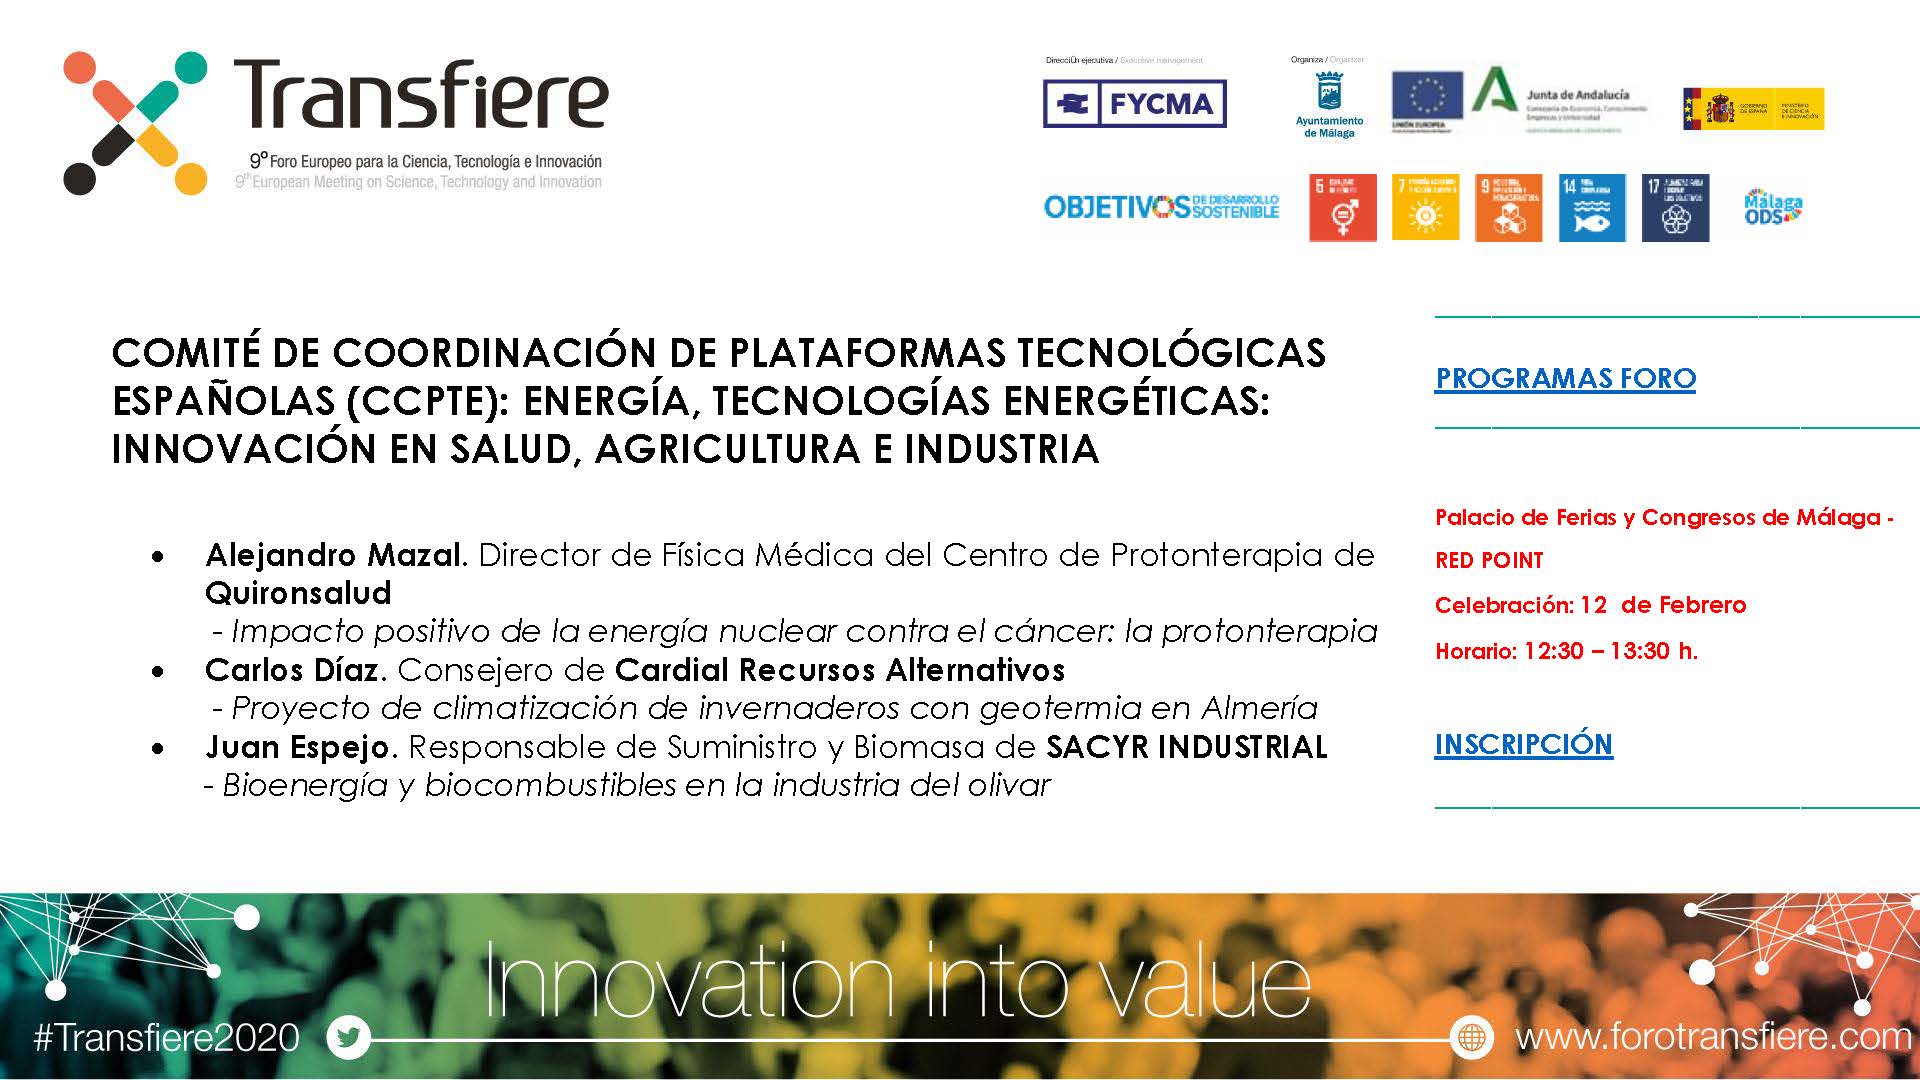 (Español) Tecnologías energéticas: innovación en salud, agricultura e industria (Málaga, 12 feb 2020)